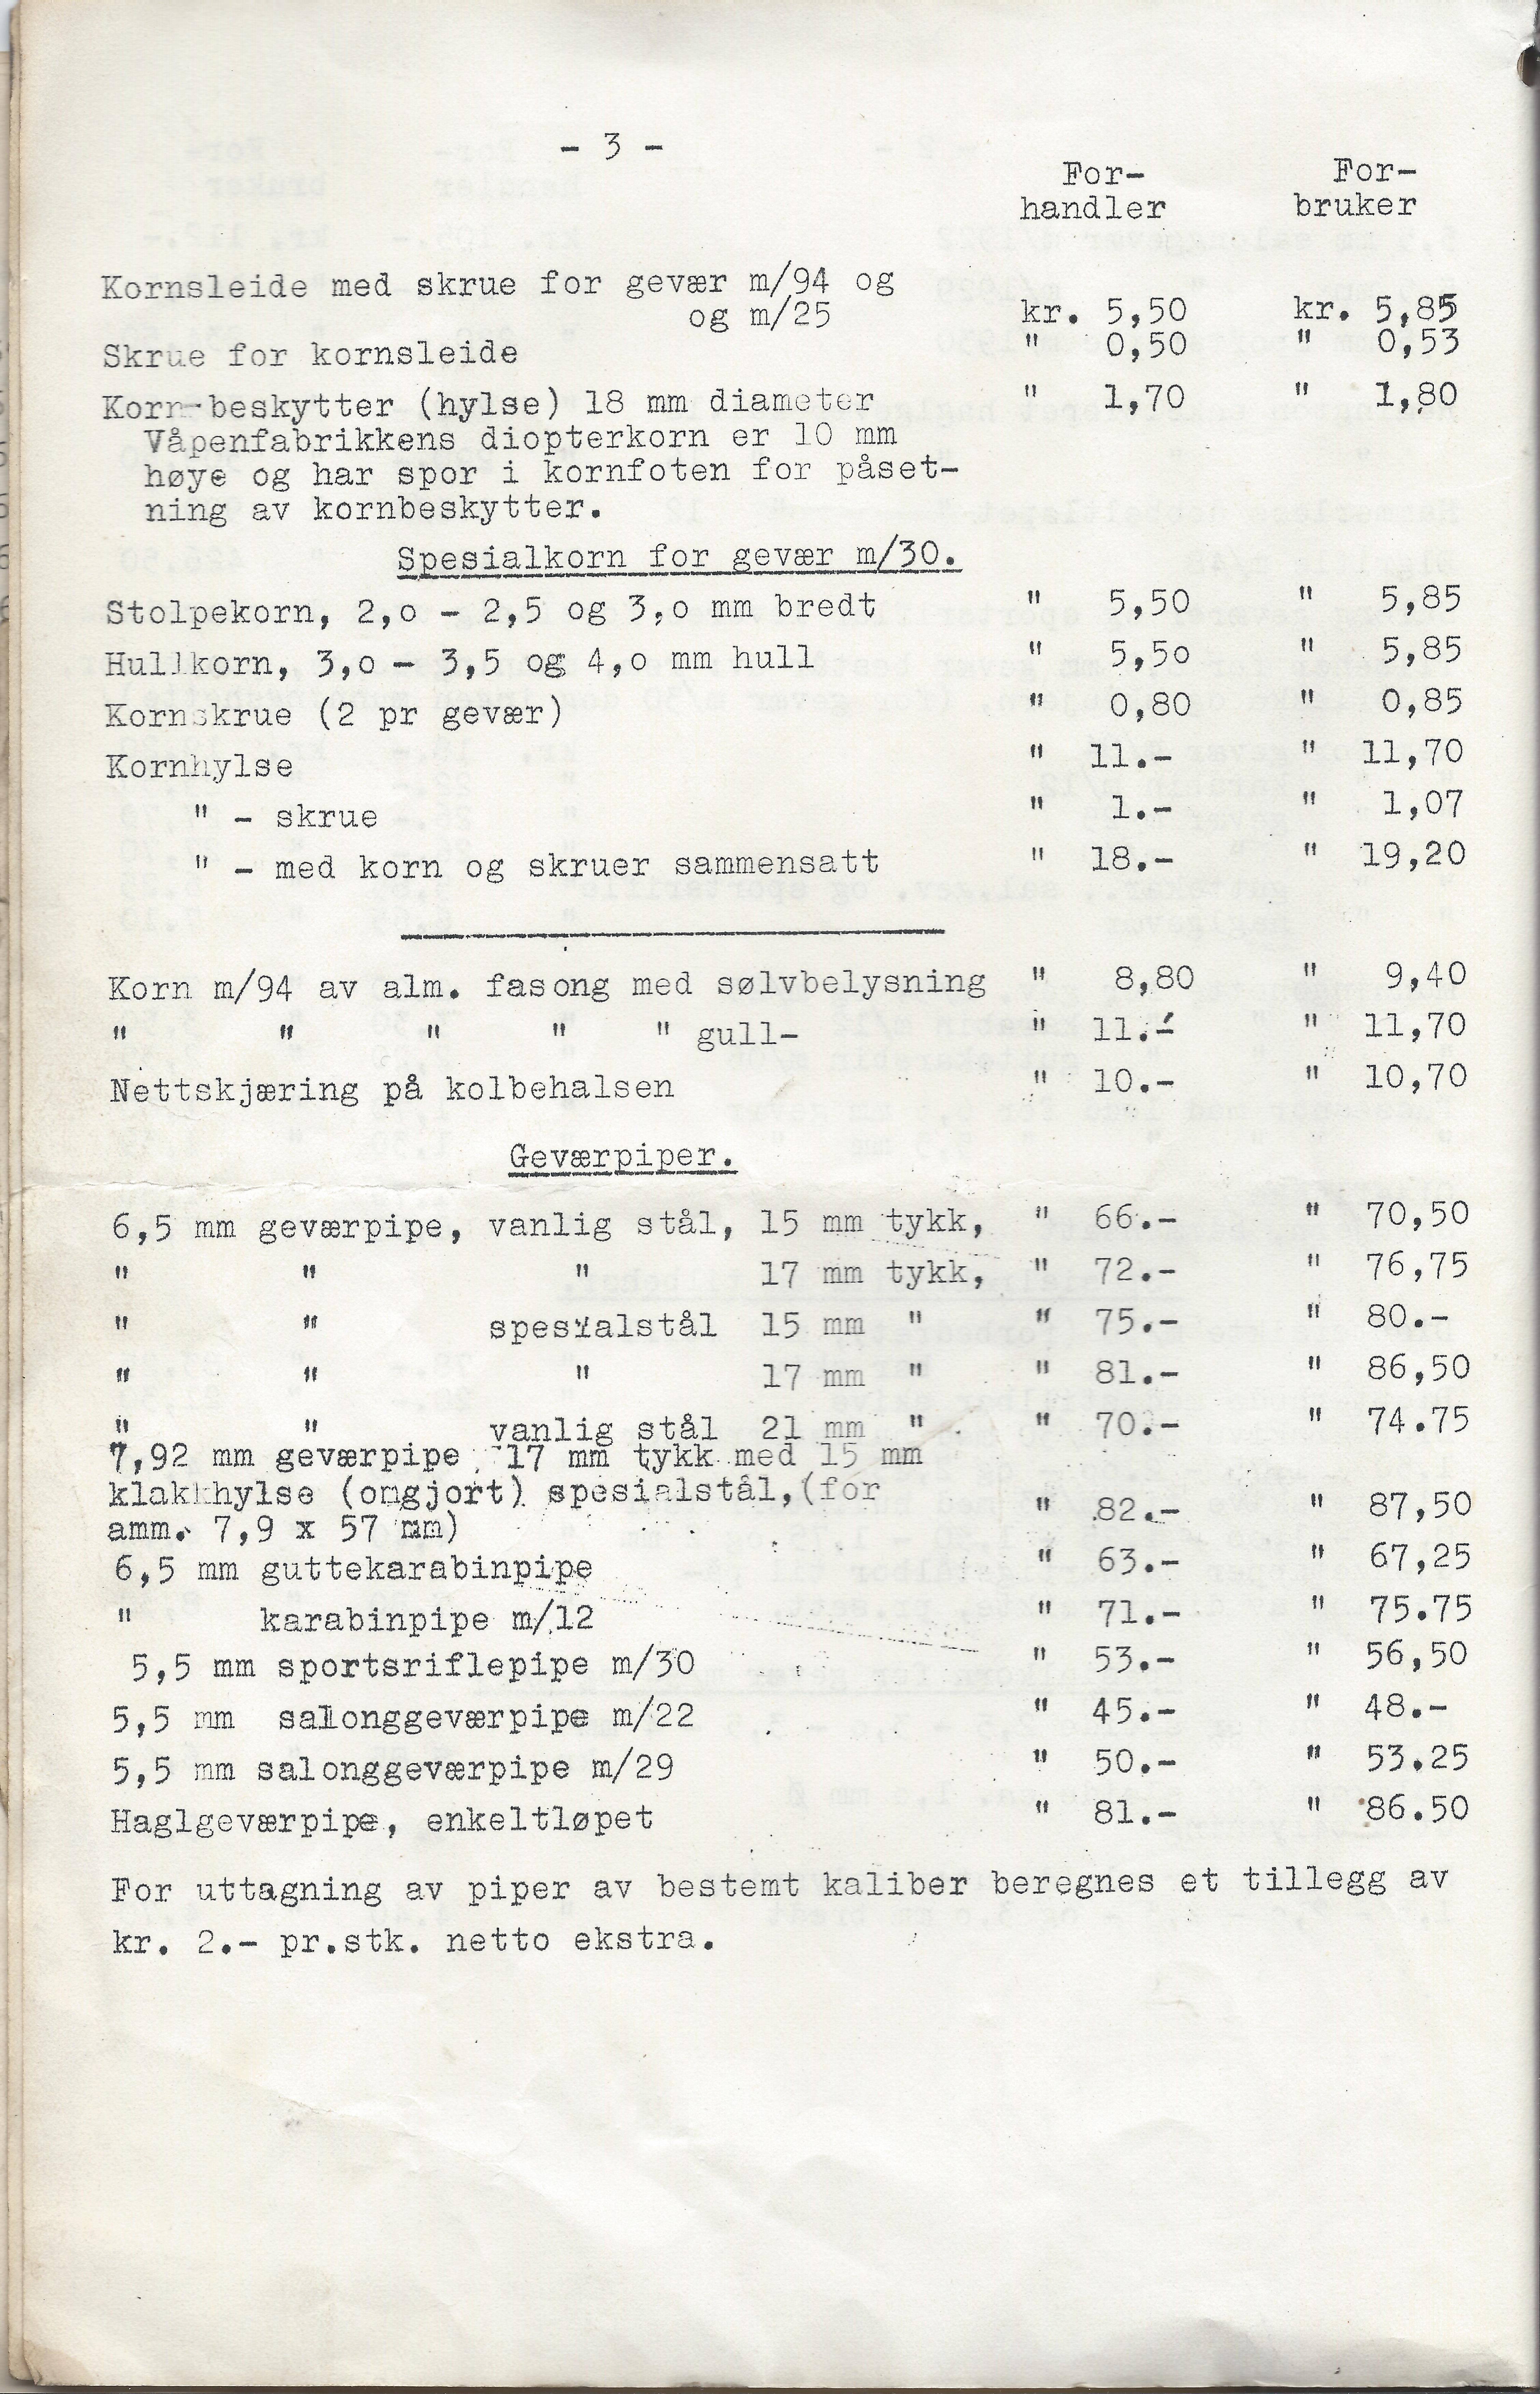 ./doc/KV/KV-Prisliste-Deler-Nr15-September-1948-4.jpg